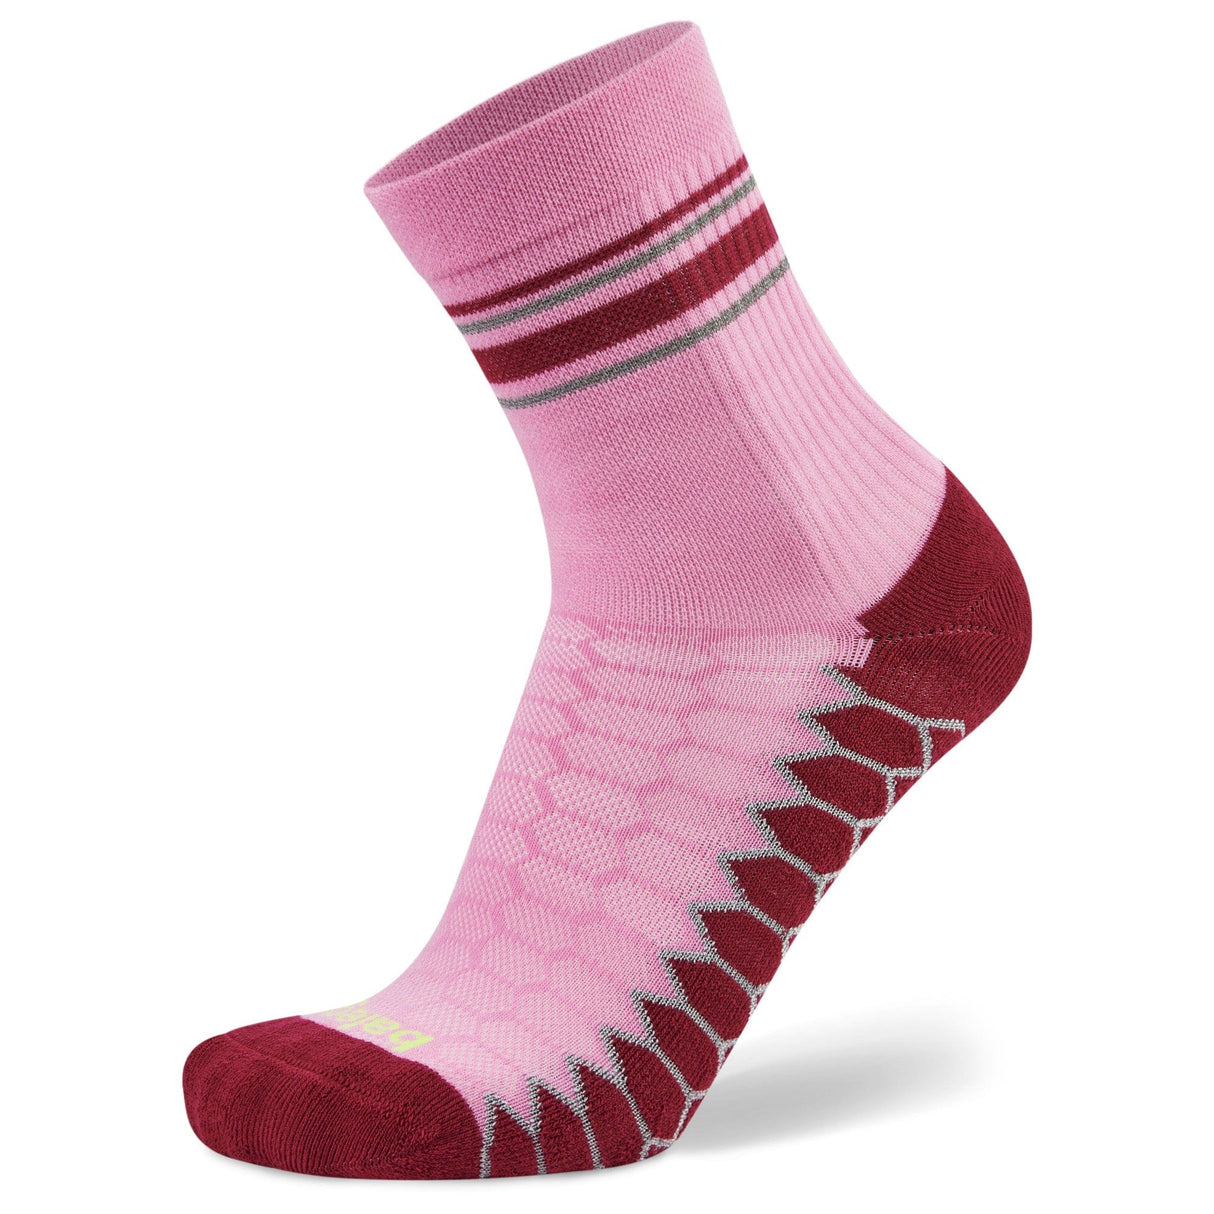 Balega Silver Mini Crew Socks  -  Small / Super Pink